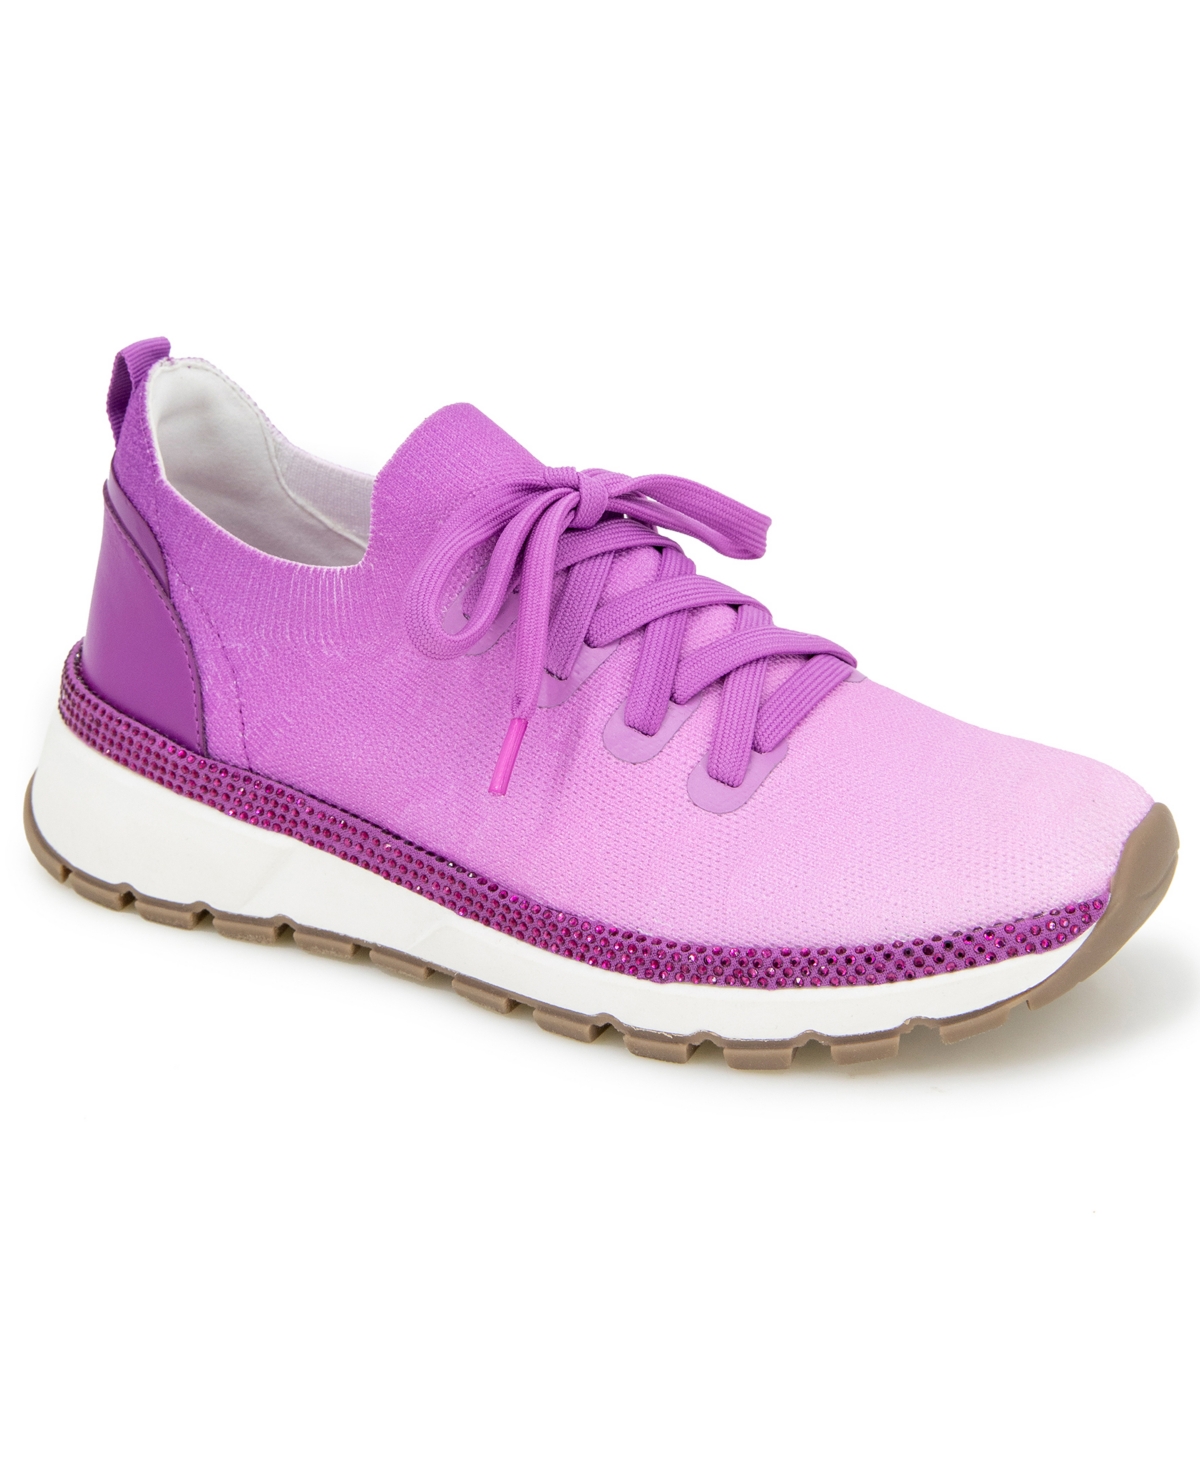 Women's Kuest Sneakers - Lilac/Purple Knit